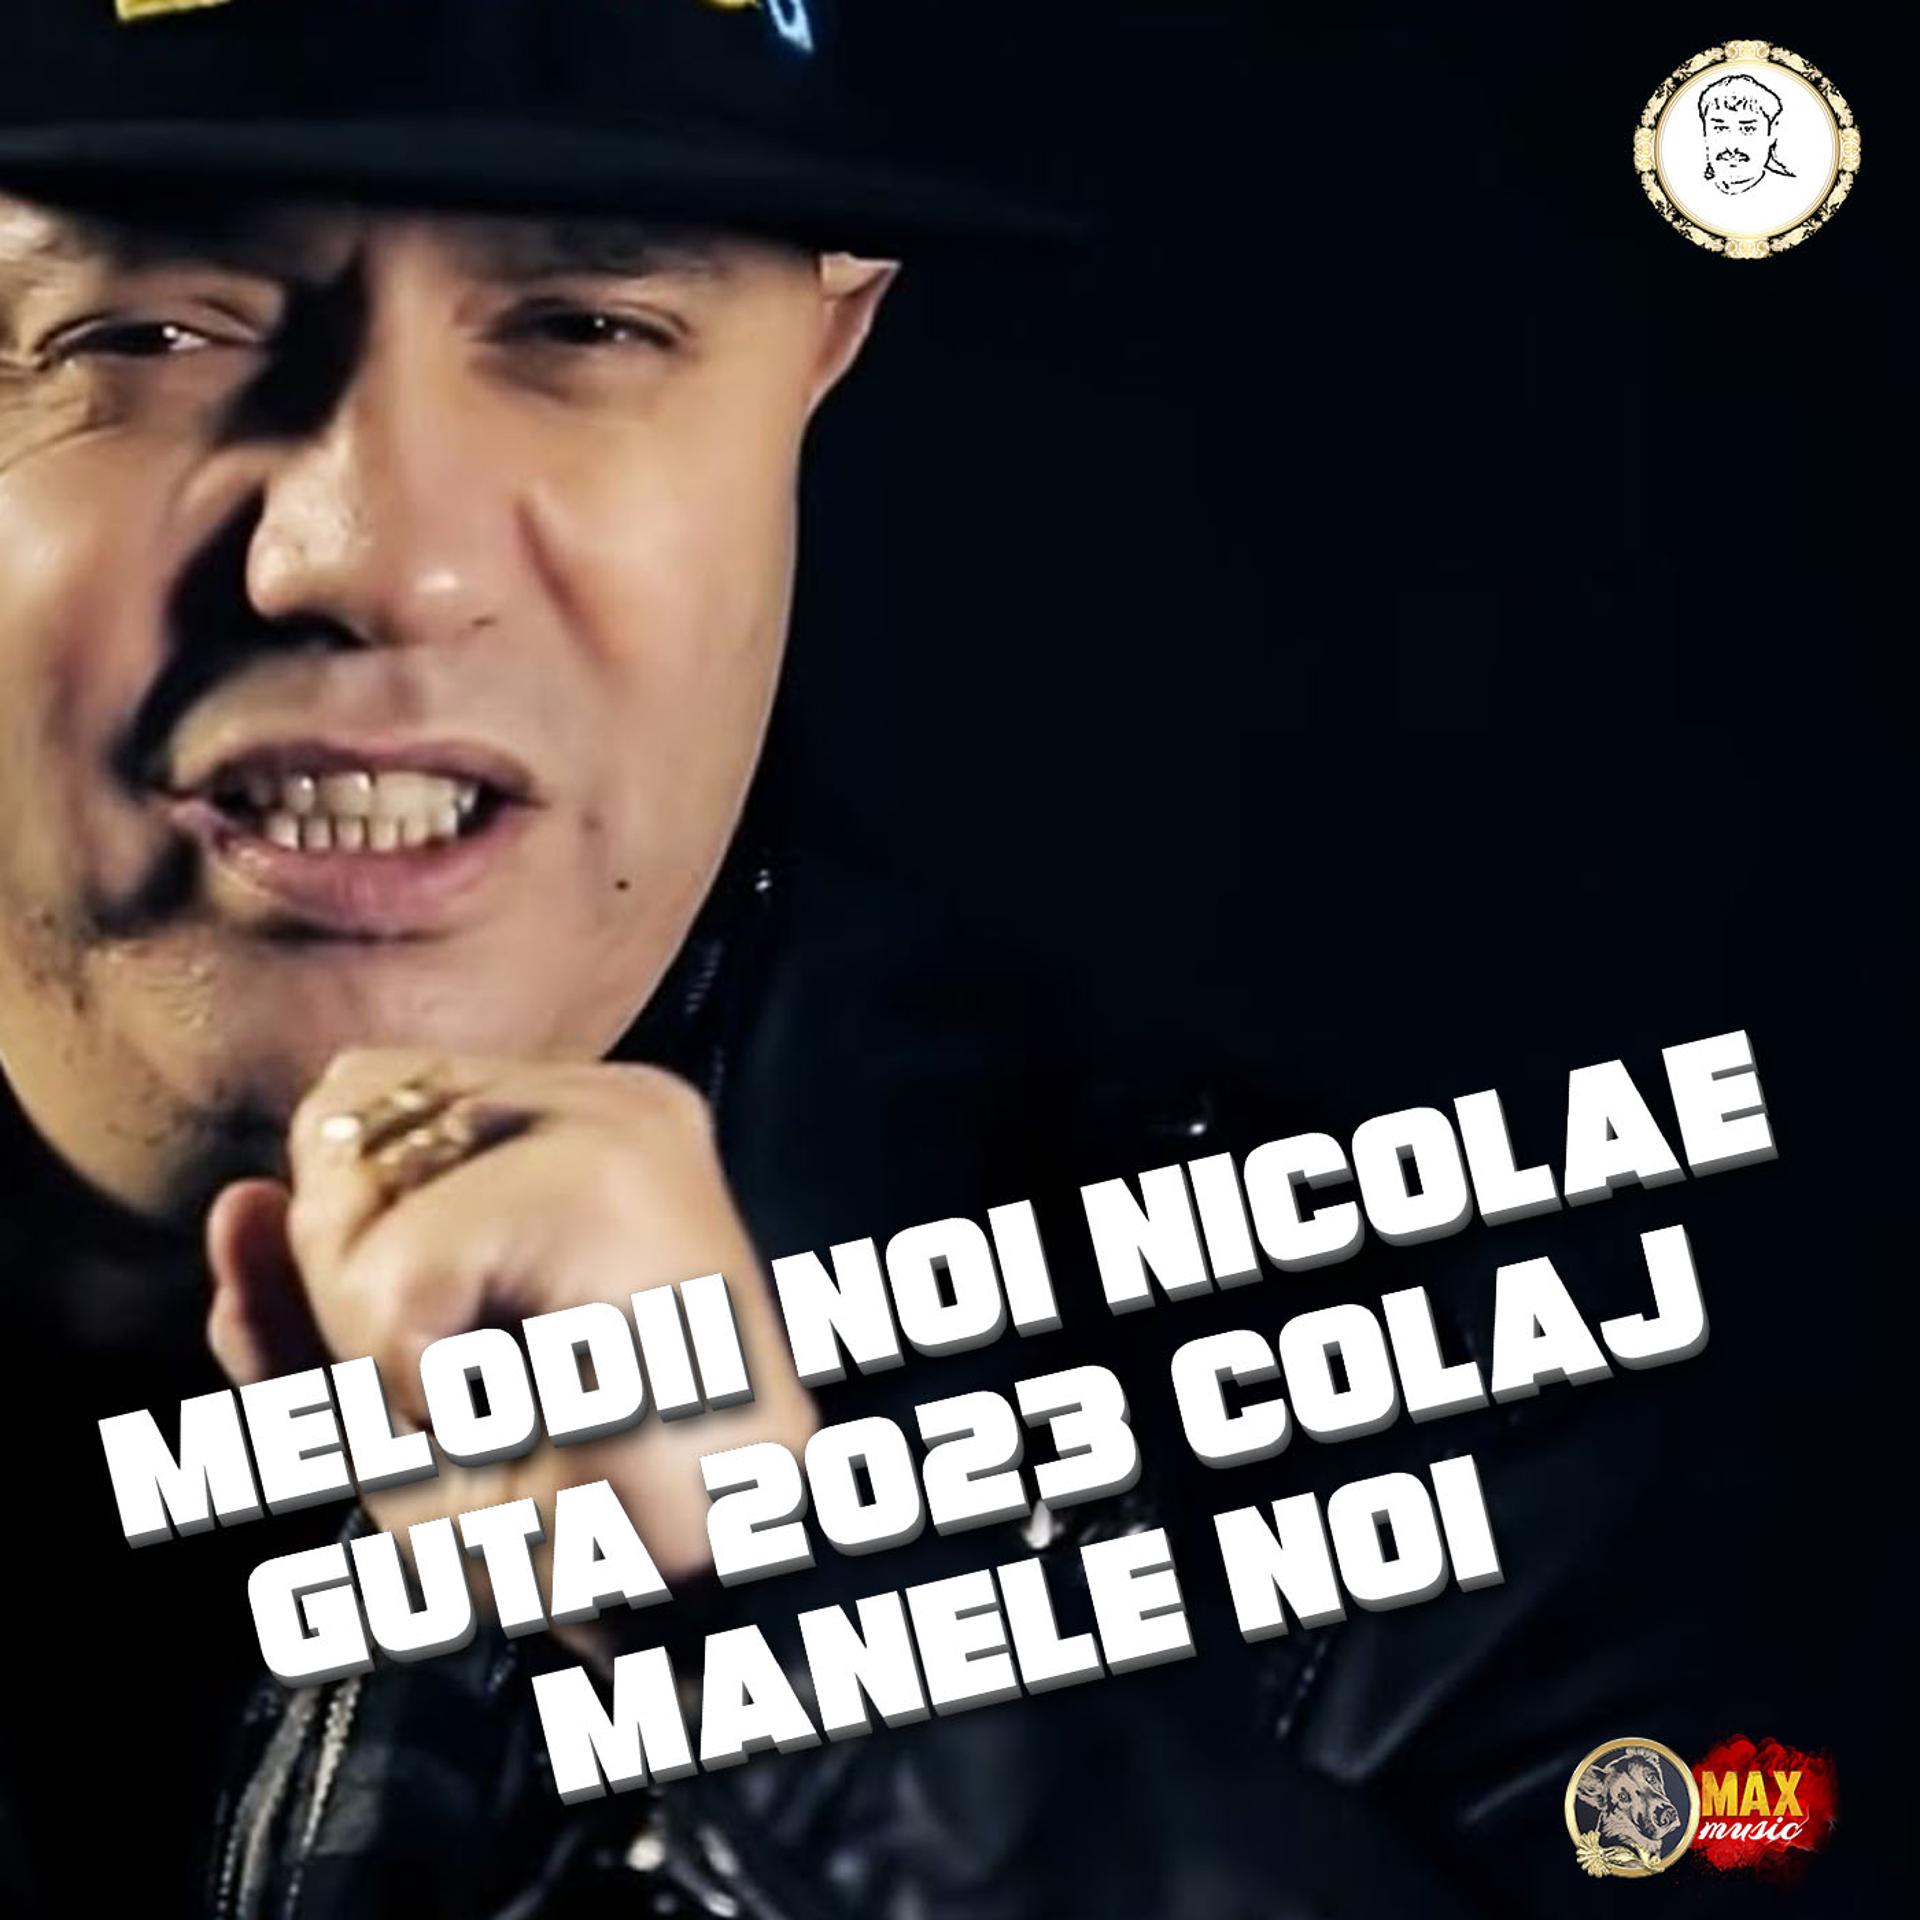 Постер альбома Melodii Noi Nicolae Guta 2023 Colaj Manele Noi